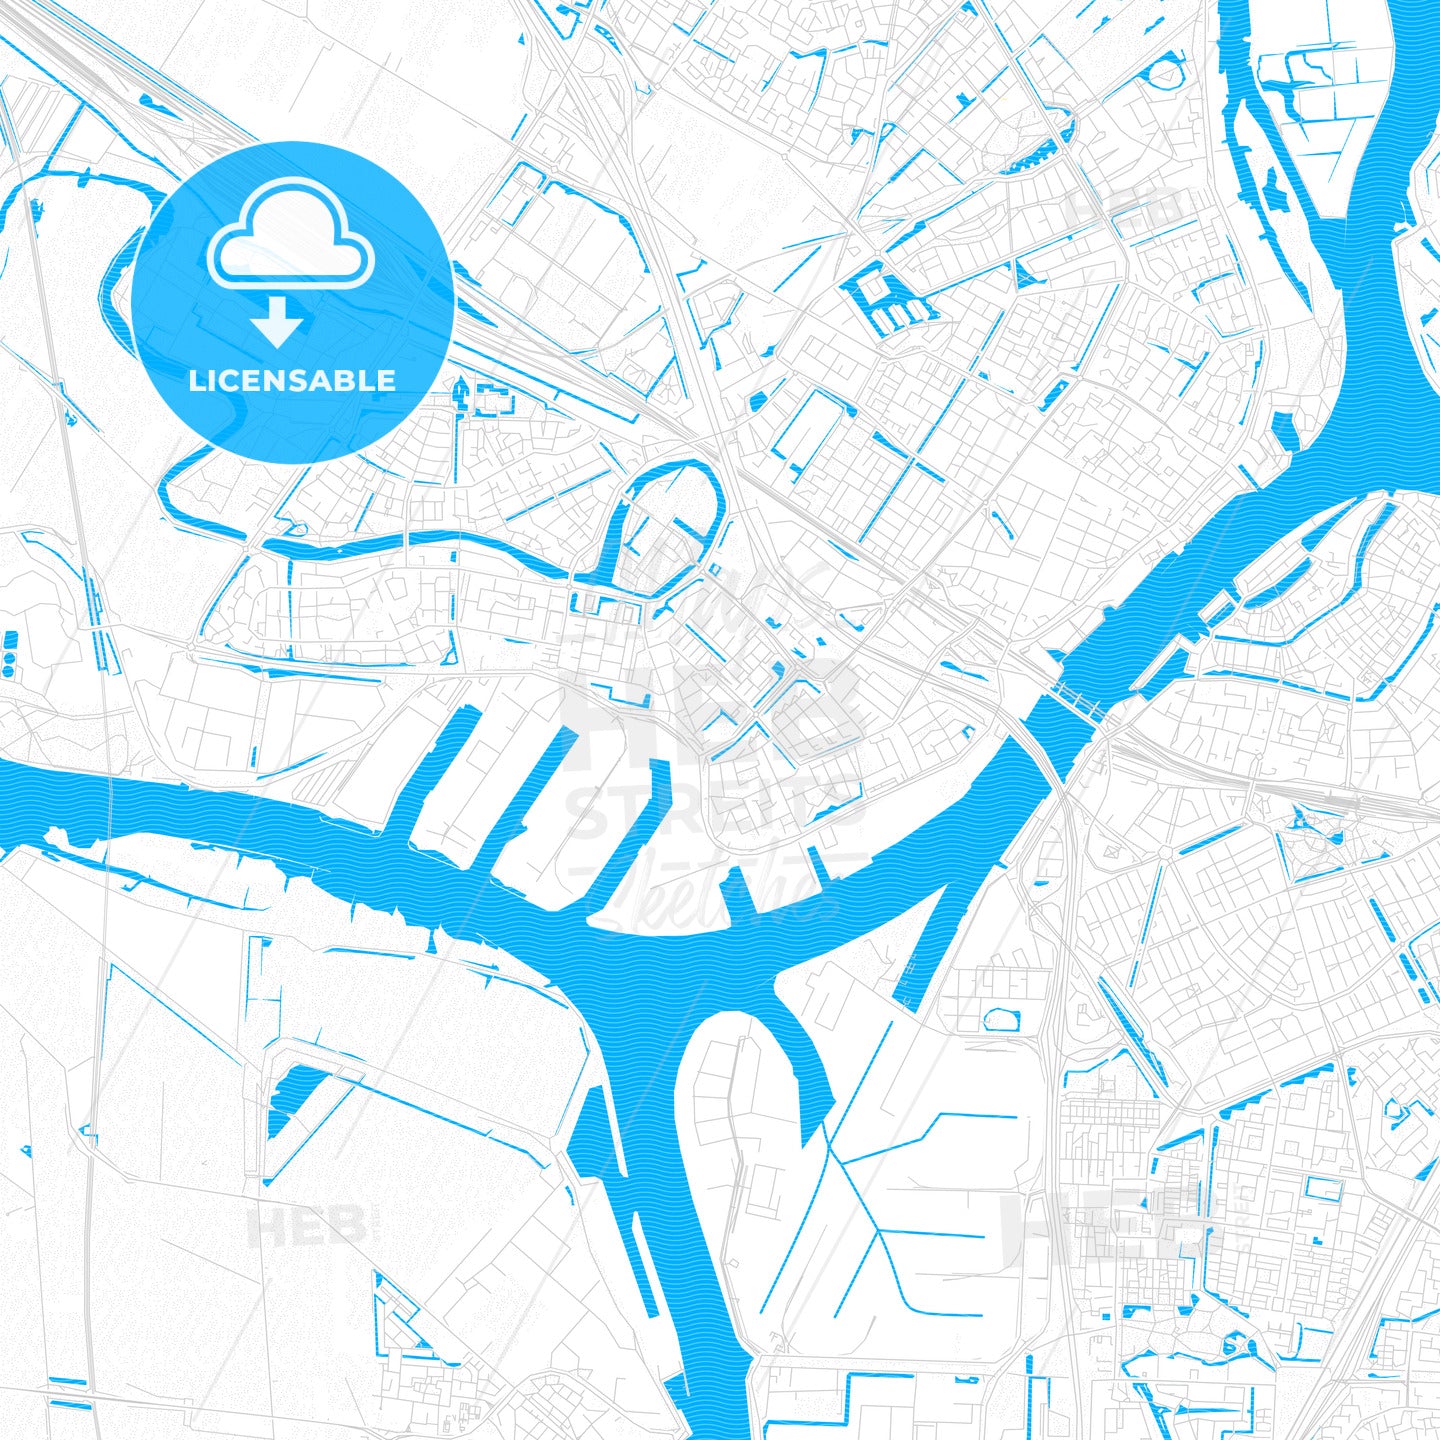 Zwijndrecht, Netherlands PDF vector map with water in focus